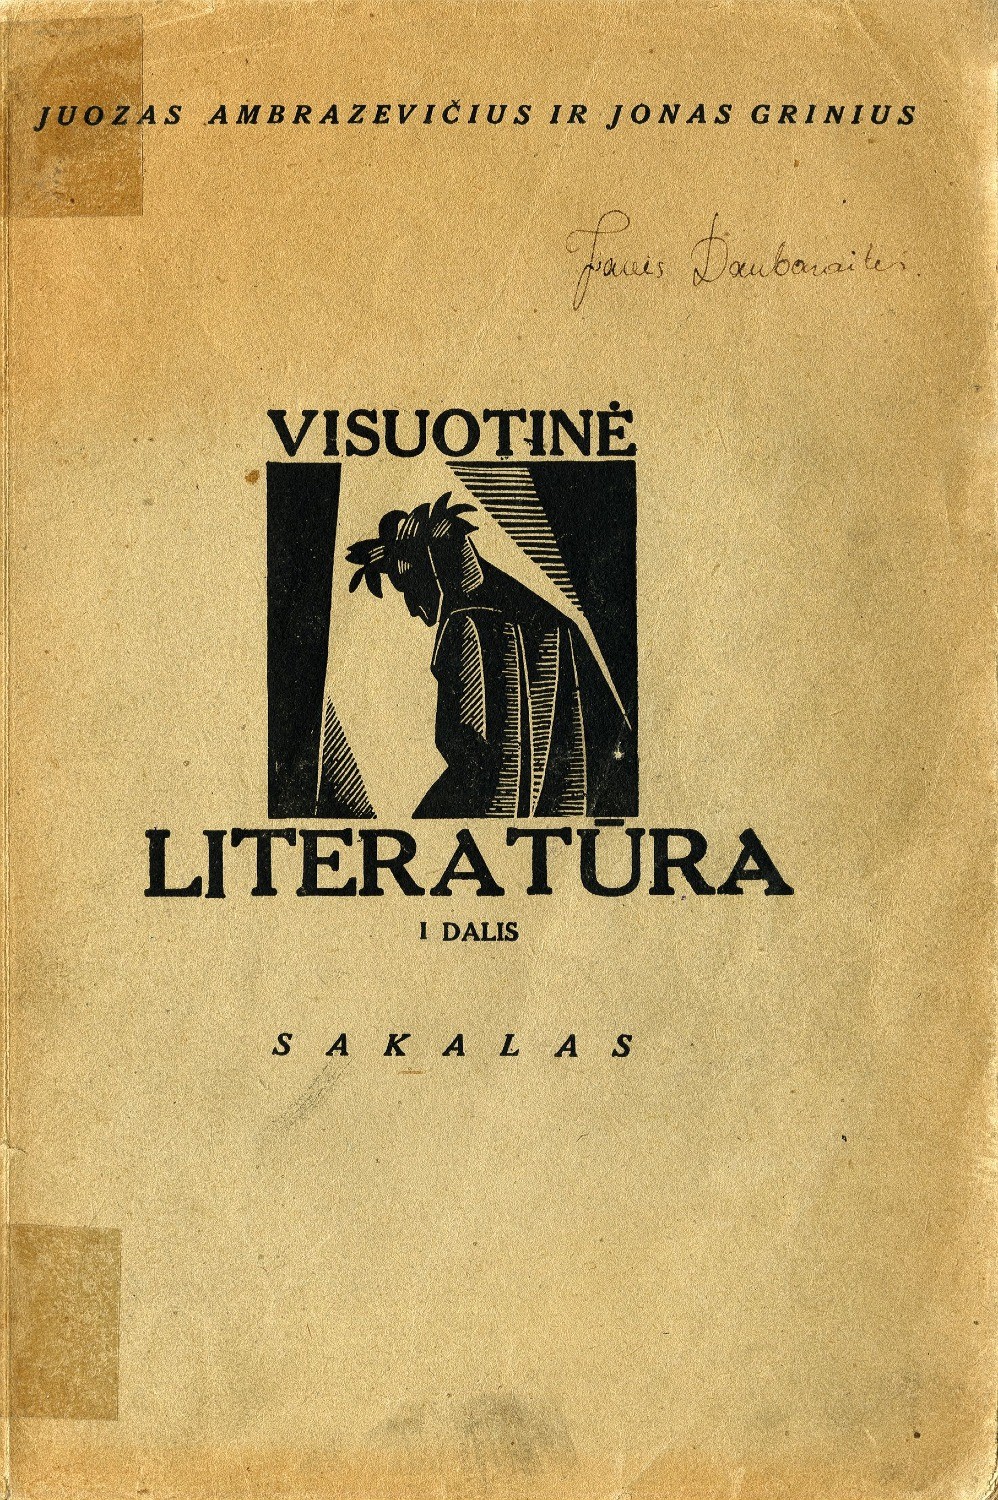 Visuotinė literatūra: aukštesniosioms mokykloms / Juozas Ambrazevičius, Jonas Grinius. – Antras leidimas. – Kaunas: Sakalas, 1934, d. 1.